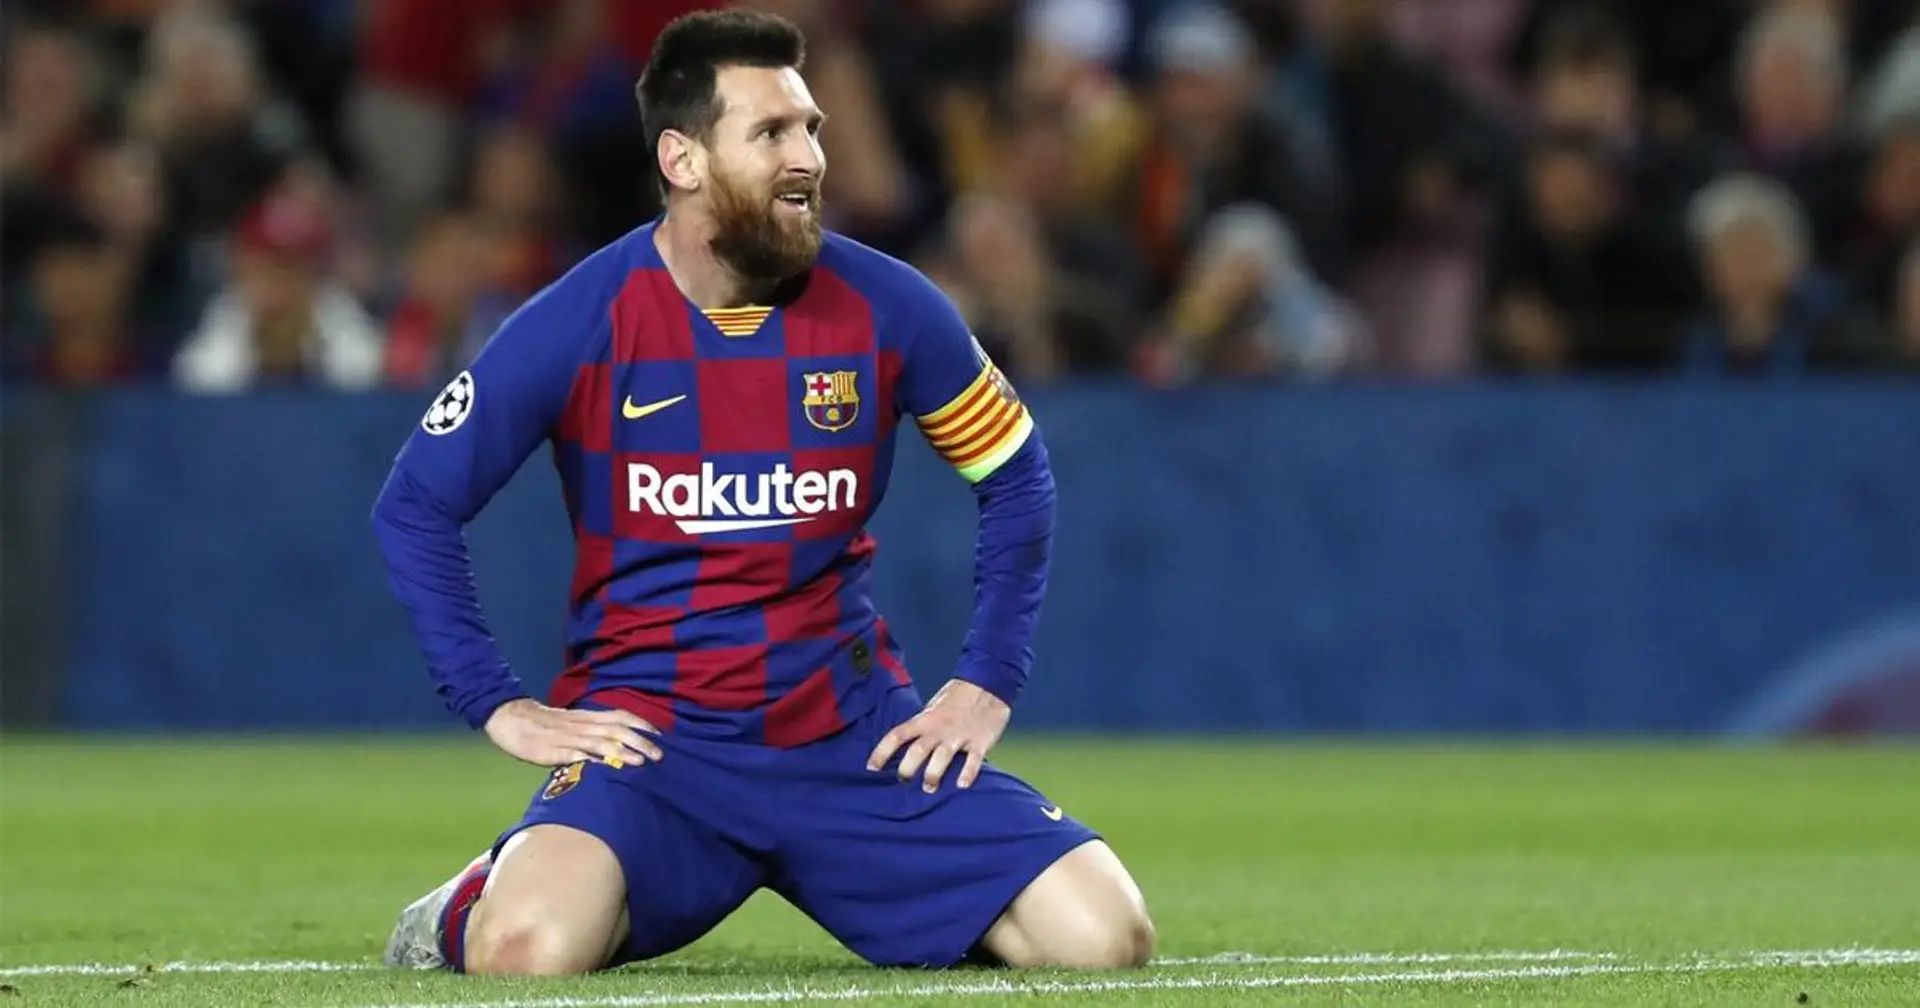 Officiel: Lionel Messi snobé pour les récompenses individuelles de la saison en Ligue des champions